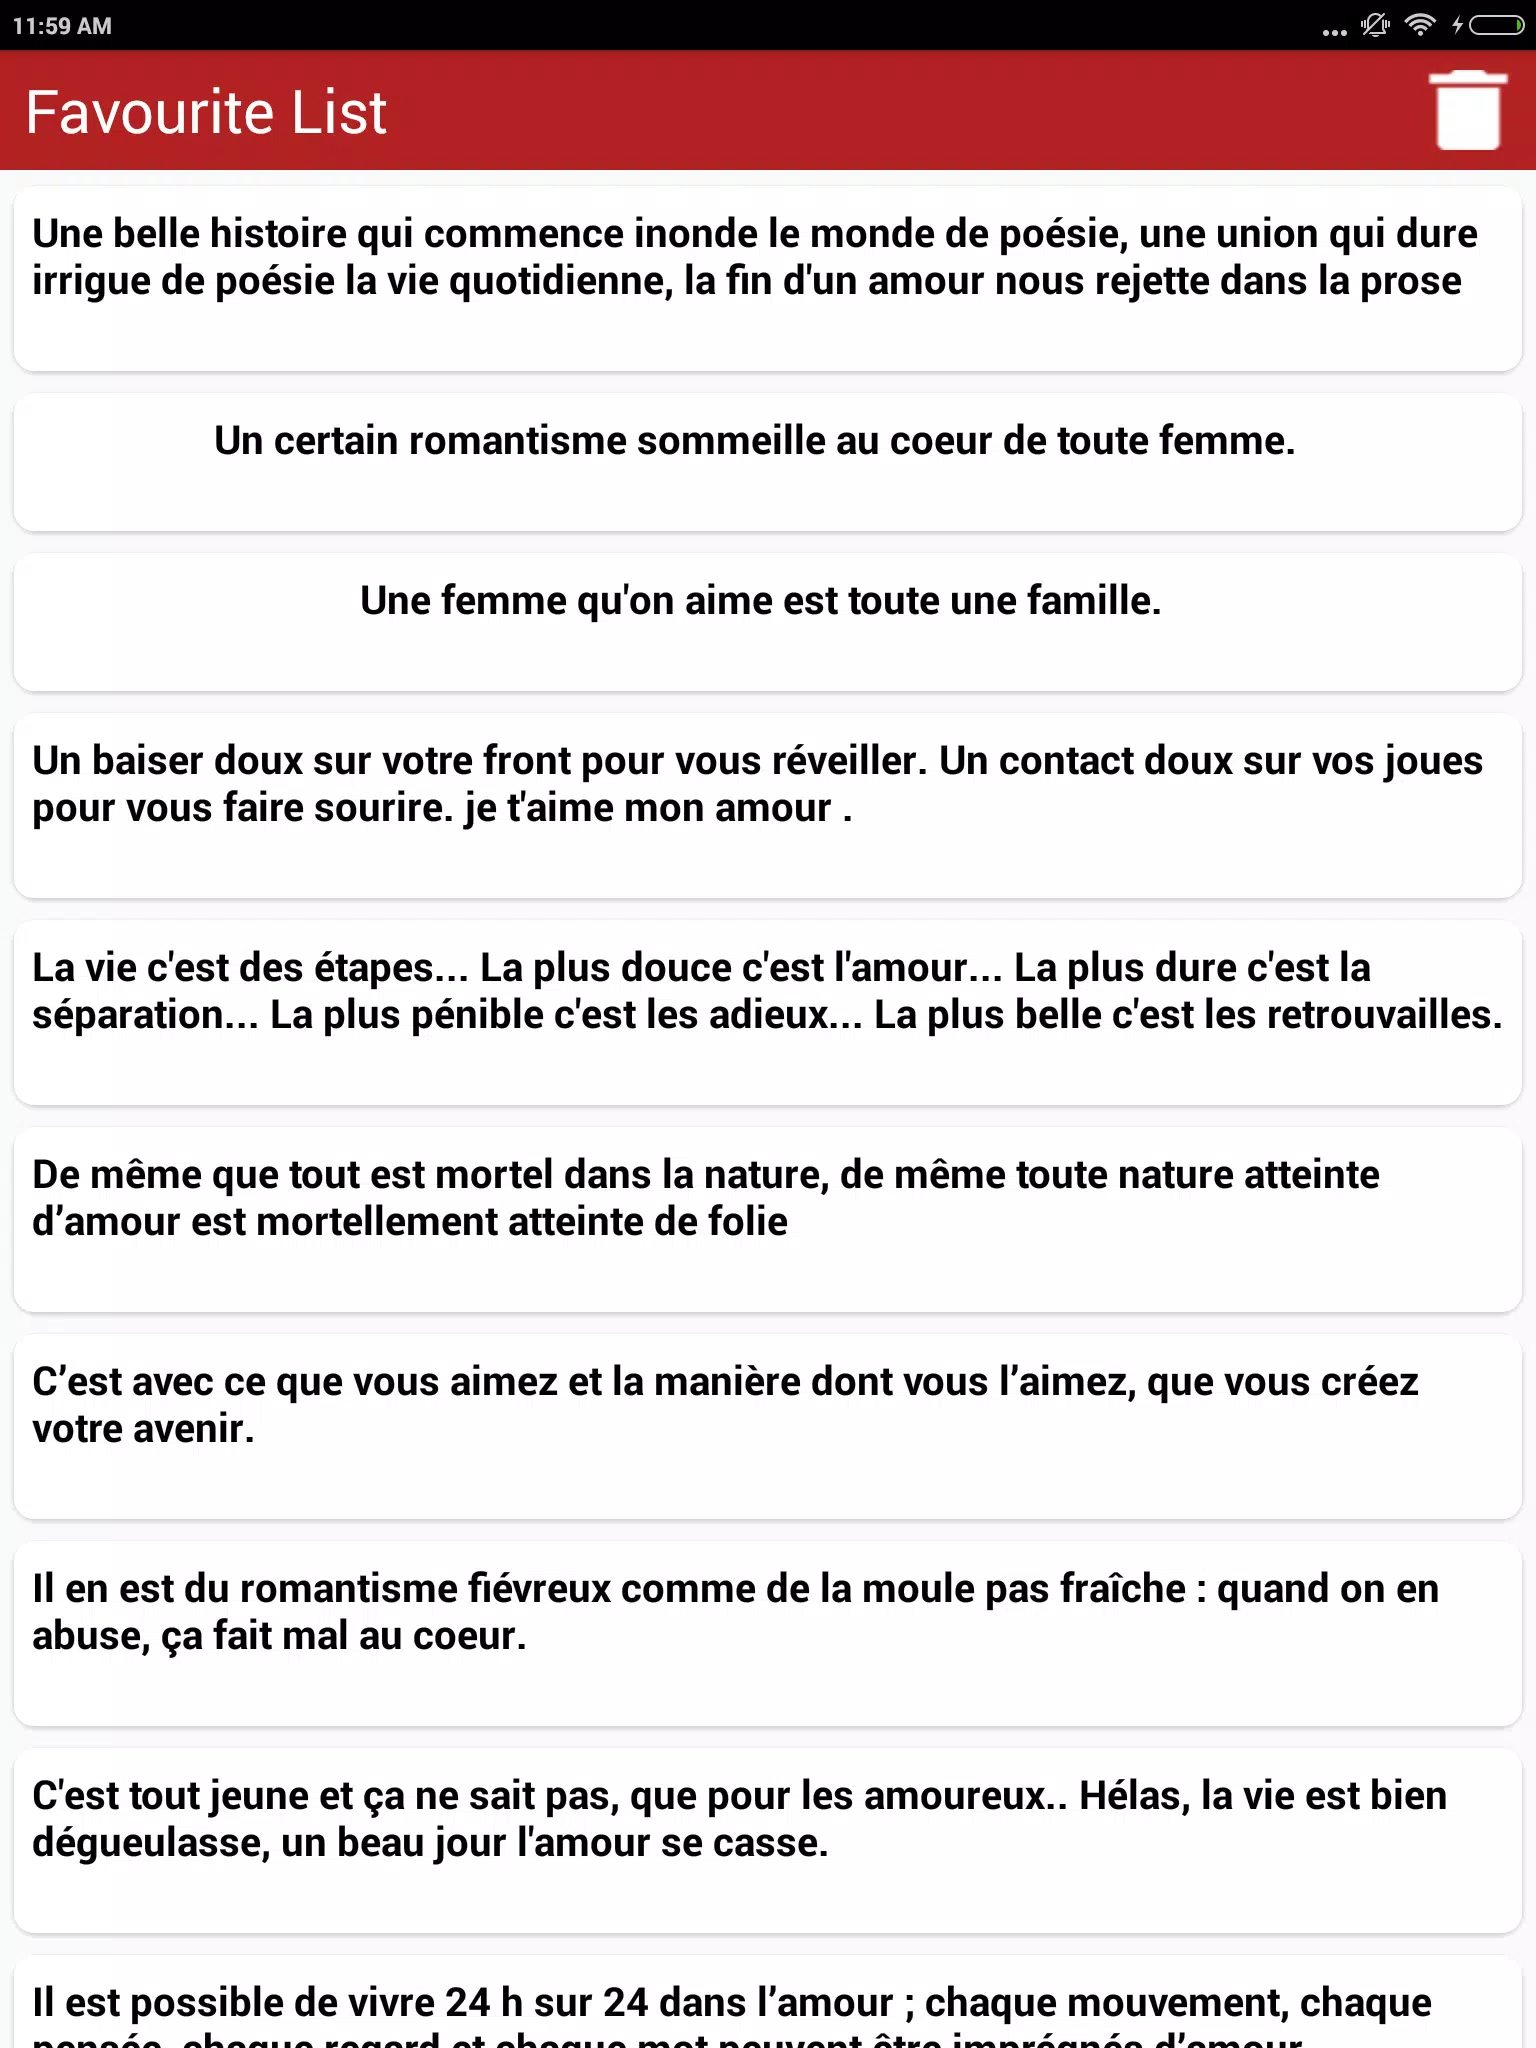 Citations Romantiques Proverbes En Francais For Android Apk Download